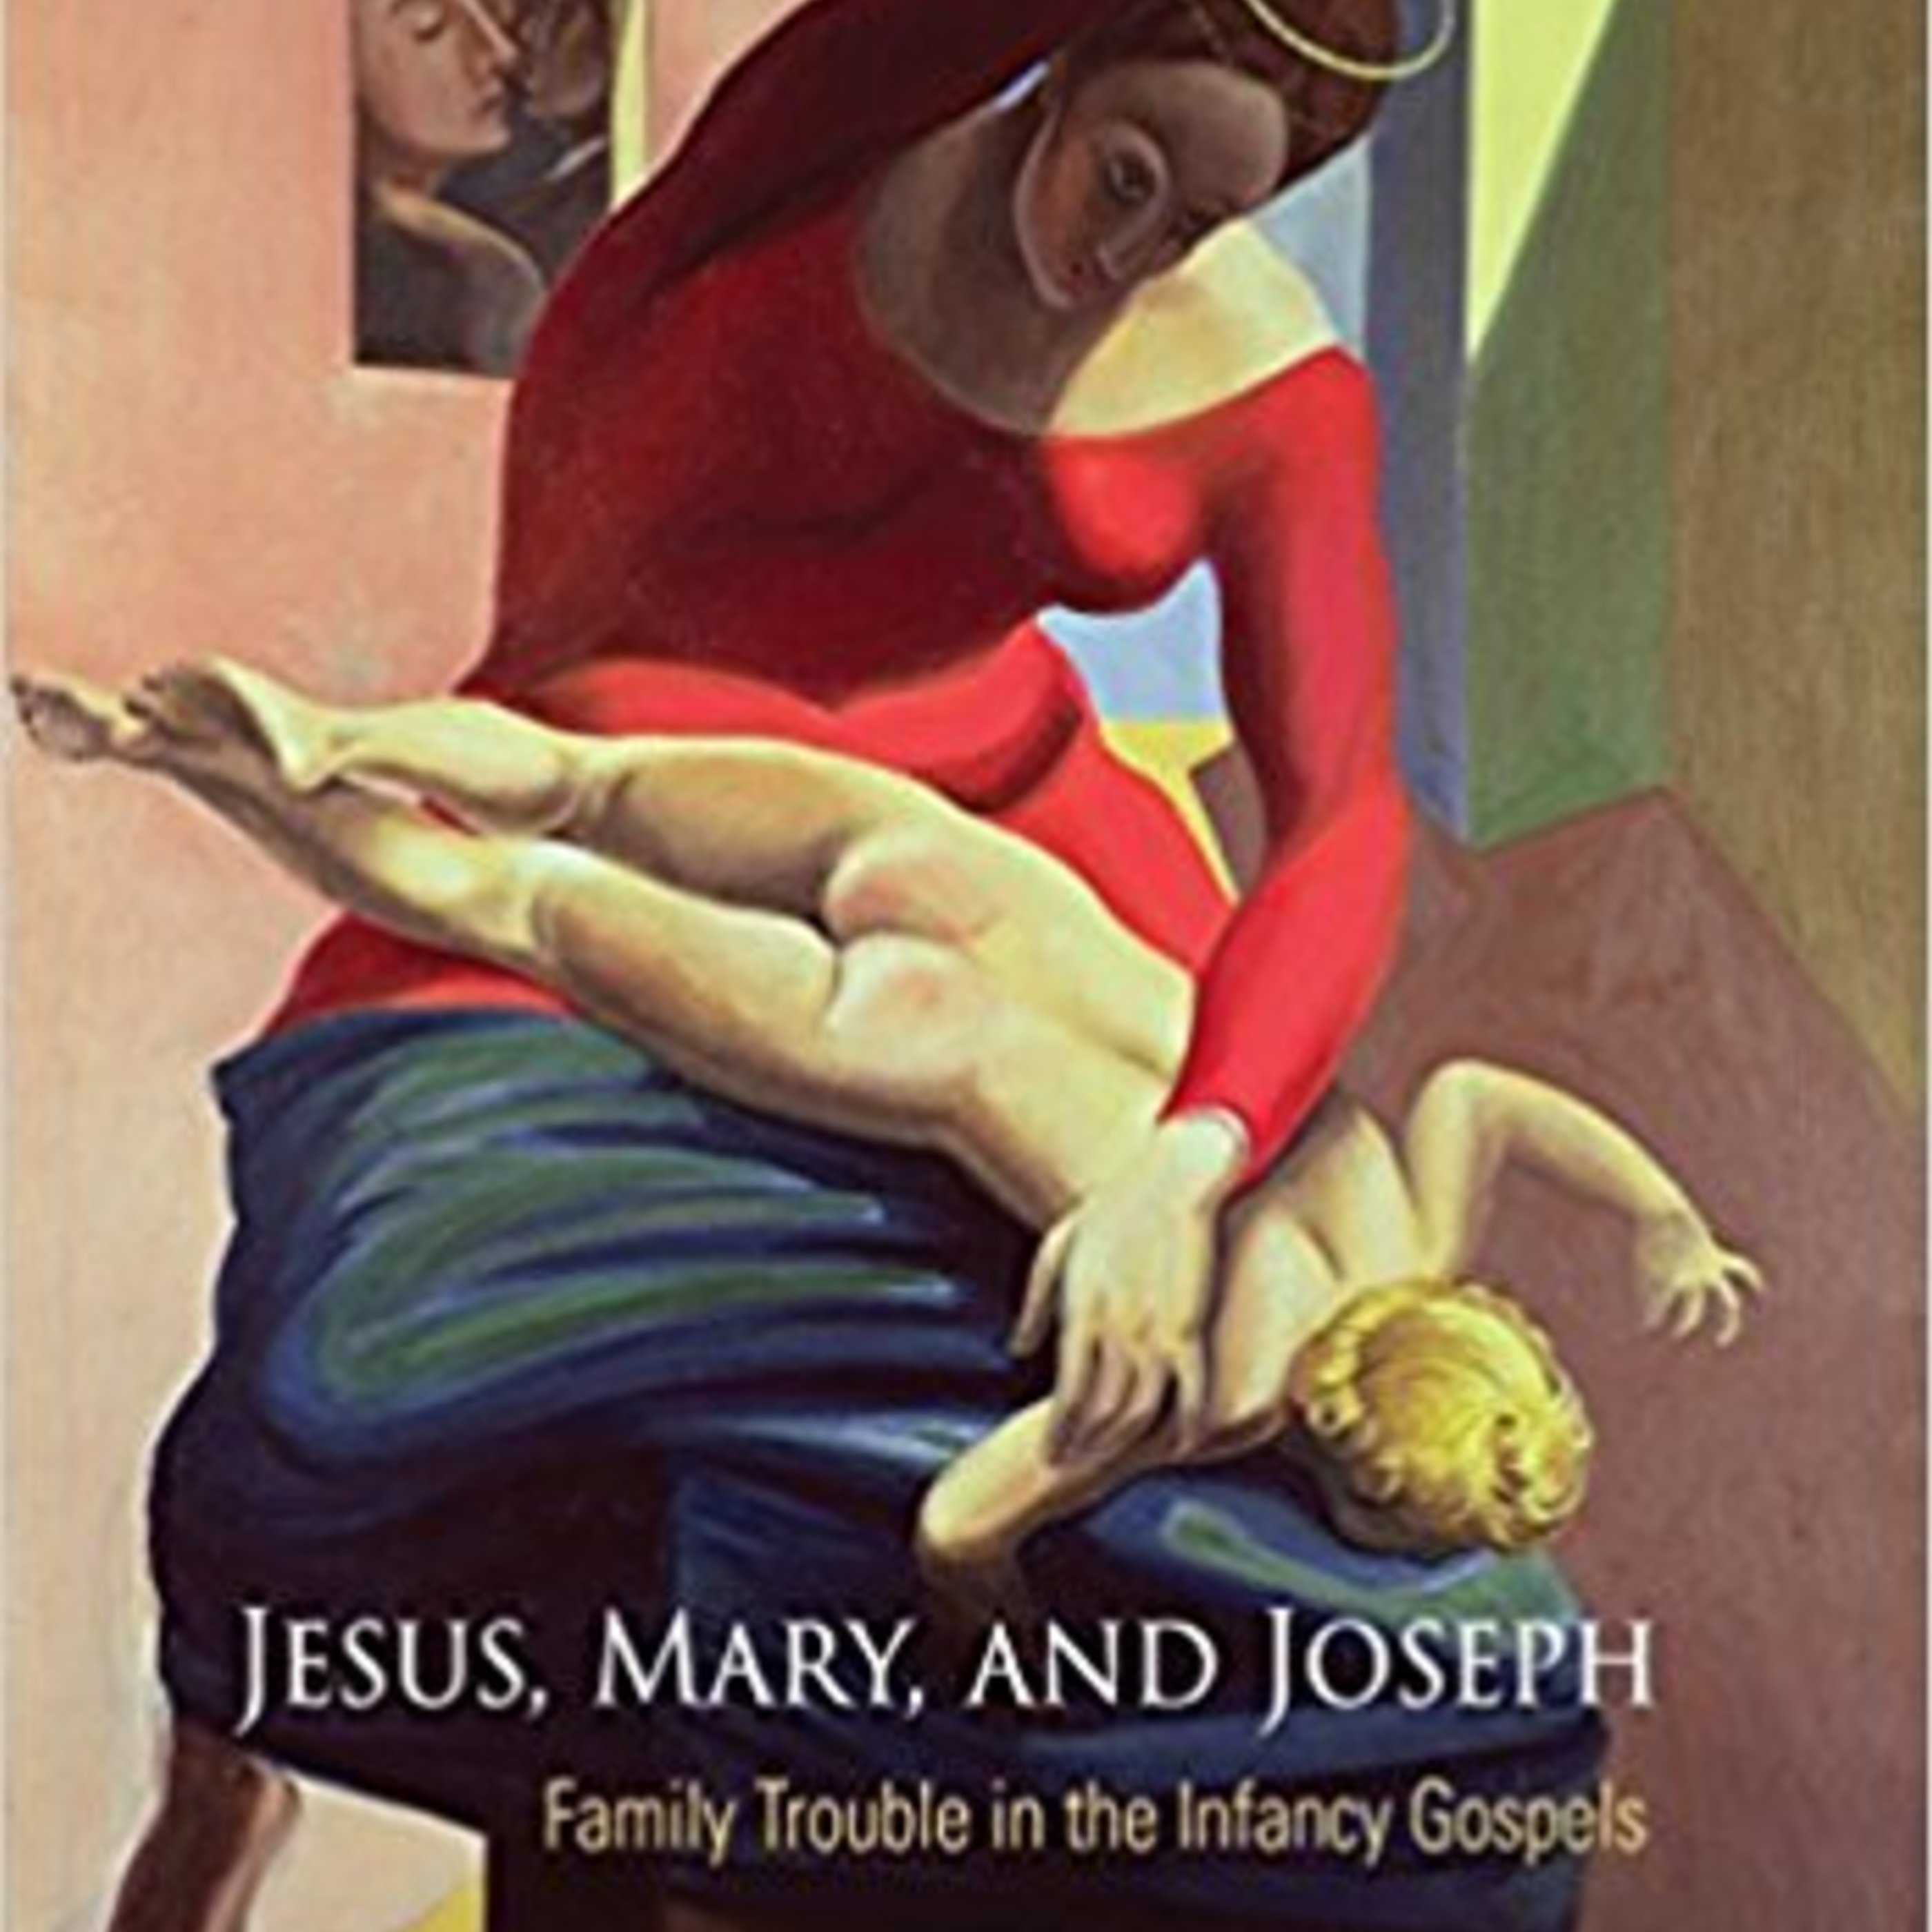 Episode 130: Jesus, Mary, and Joseph!